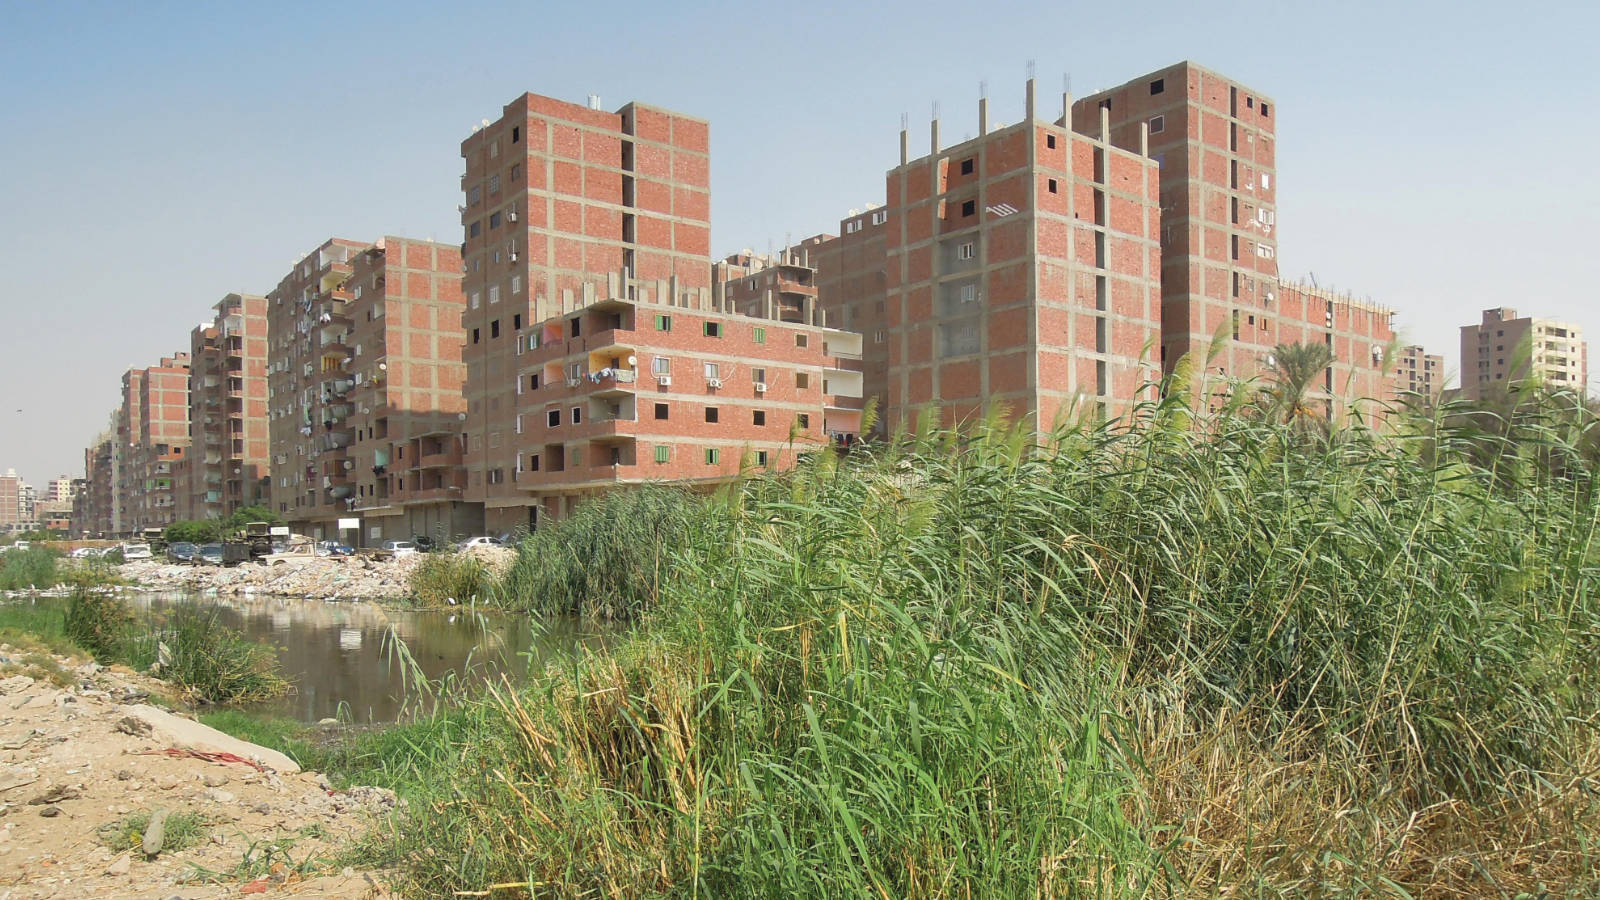 Informelle Siedlung auf landwirtschaftlichen Flächen im Großraum Kairo